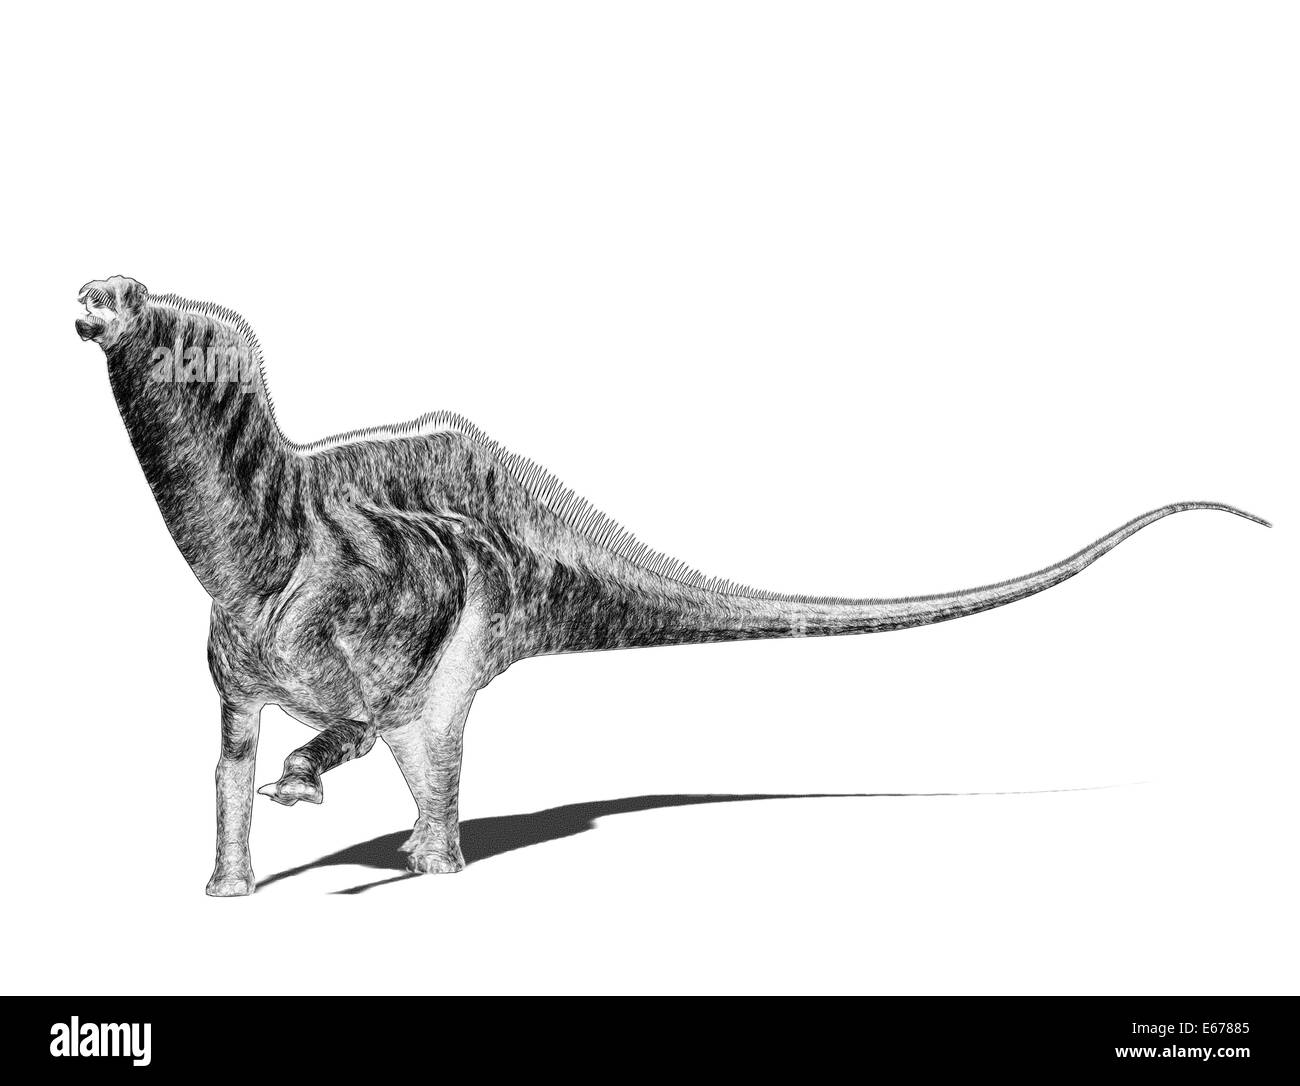 Dinosaurier Amargasaurus / dinosaur Amargasaurus Stock Photo